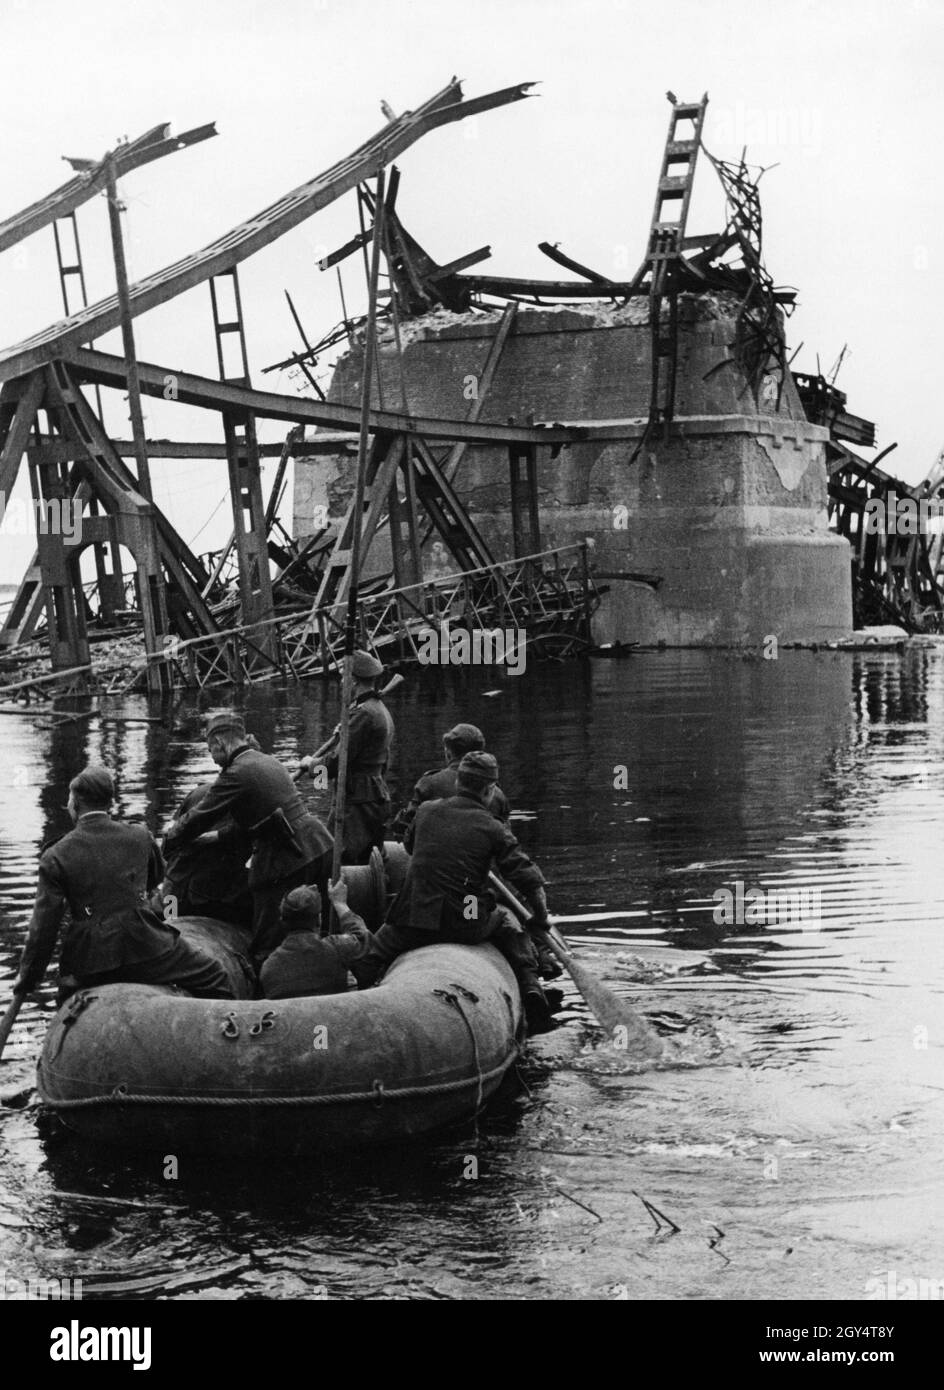 Deutsche Wehrmachtssoldaten sitzen in einem Schlauchboot und überfliegen  eine gesprengte Brücke. [Automatisierte Übersetzung] Stockfotografie - Alamy